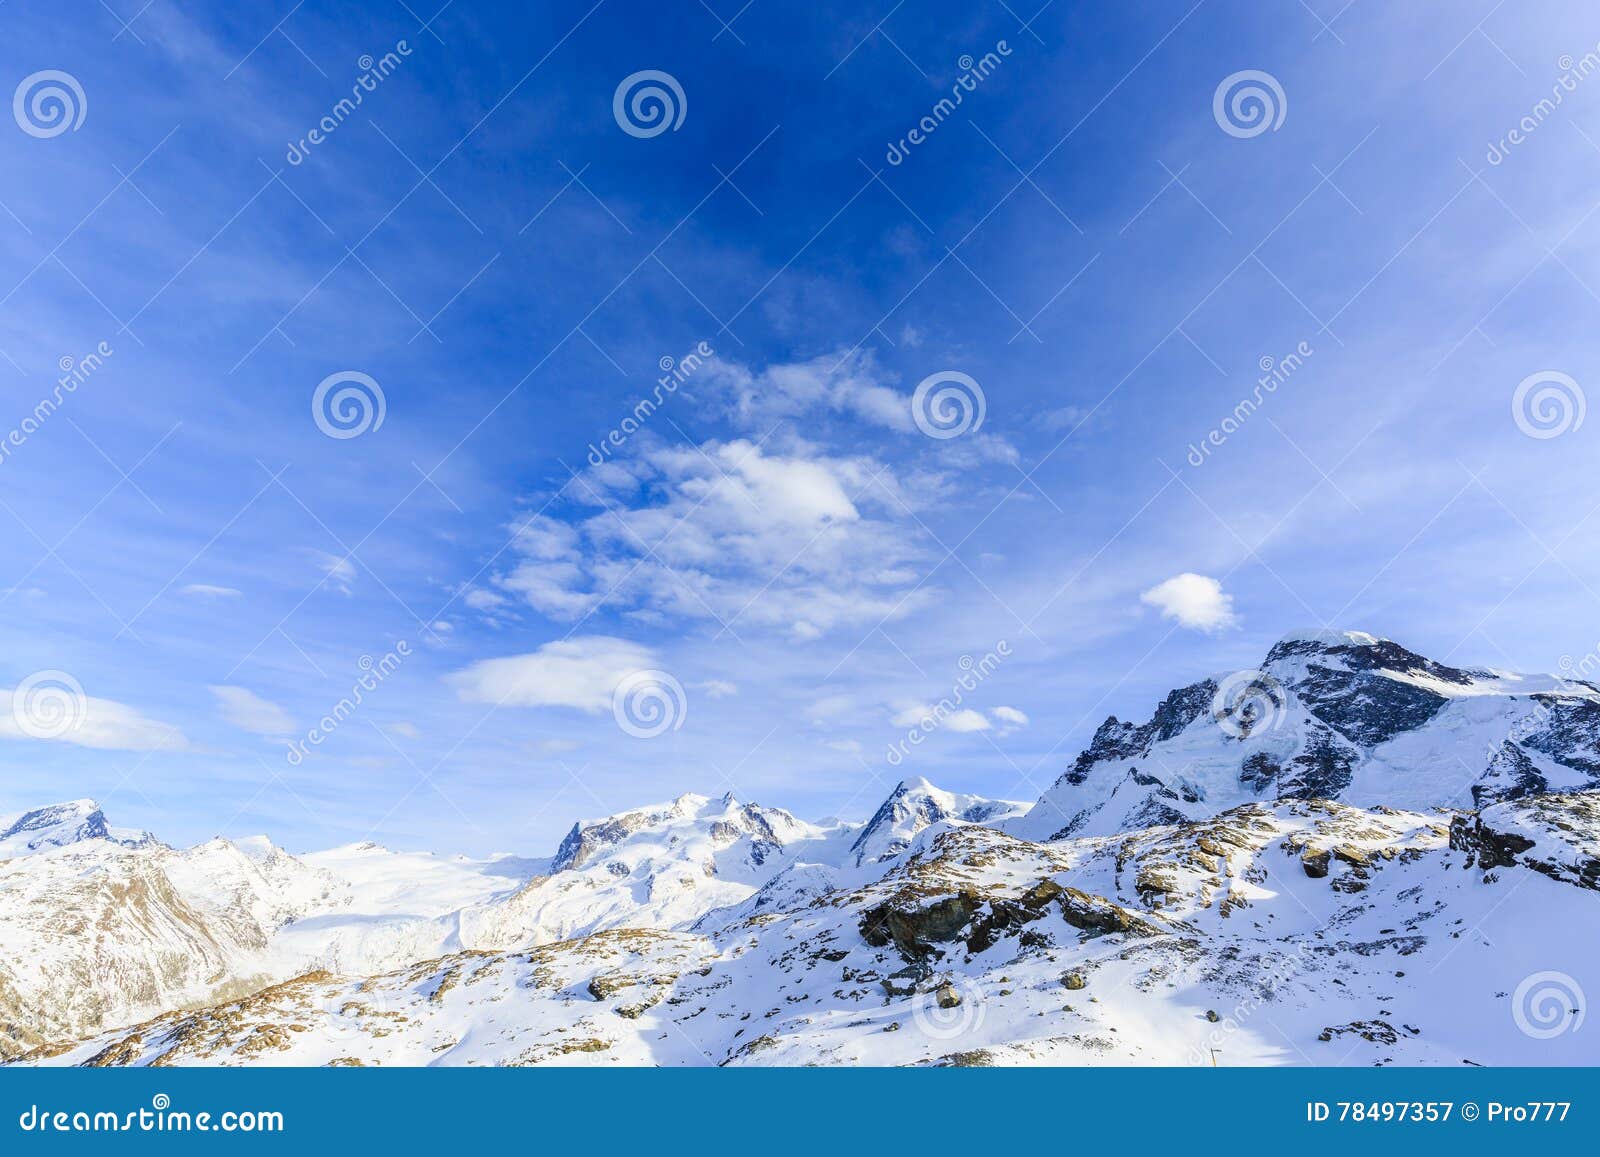 matterhorn surroundings with gornegrat in zermatt.